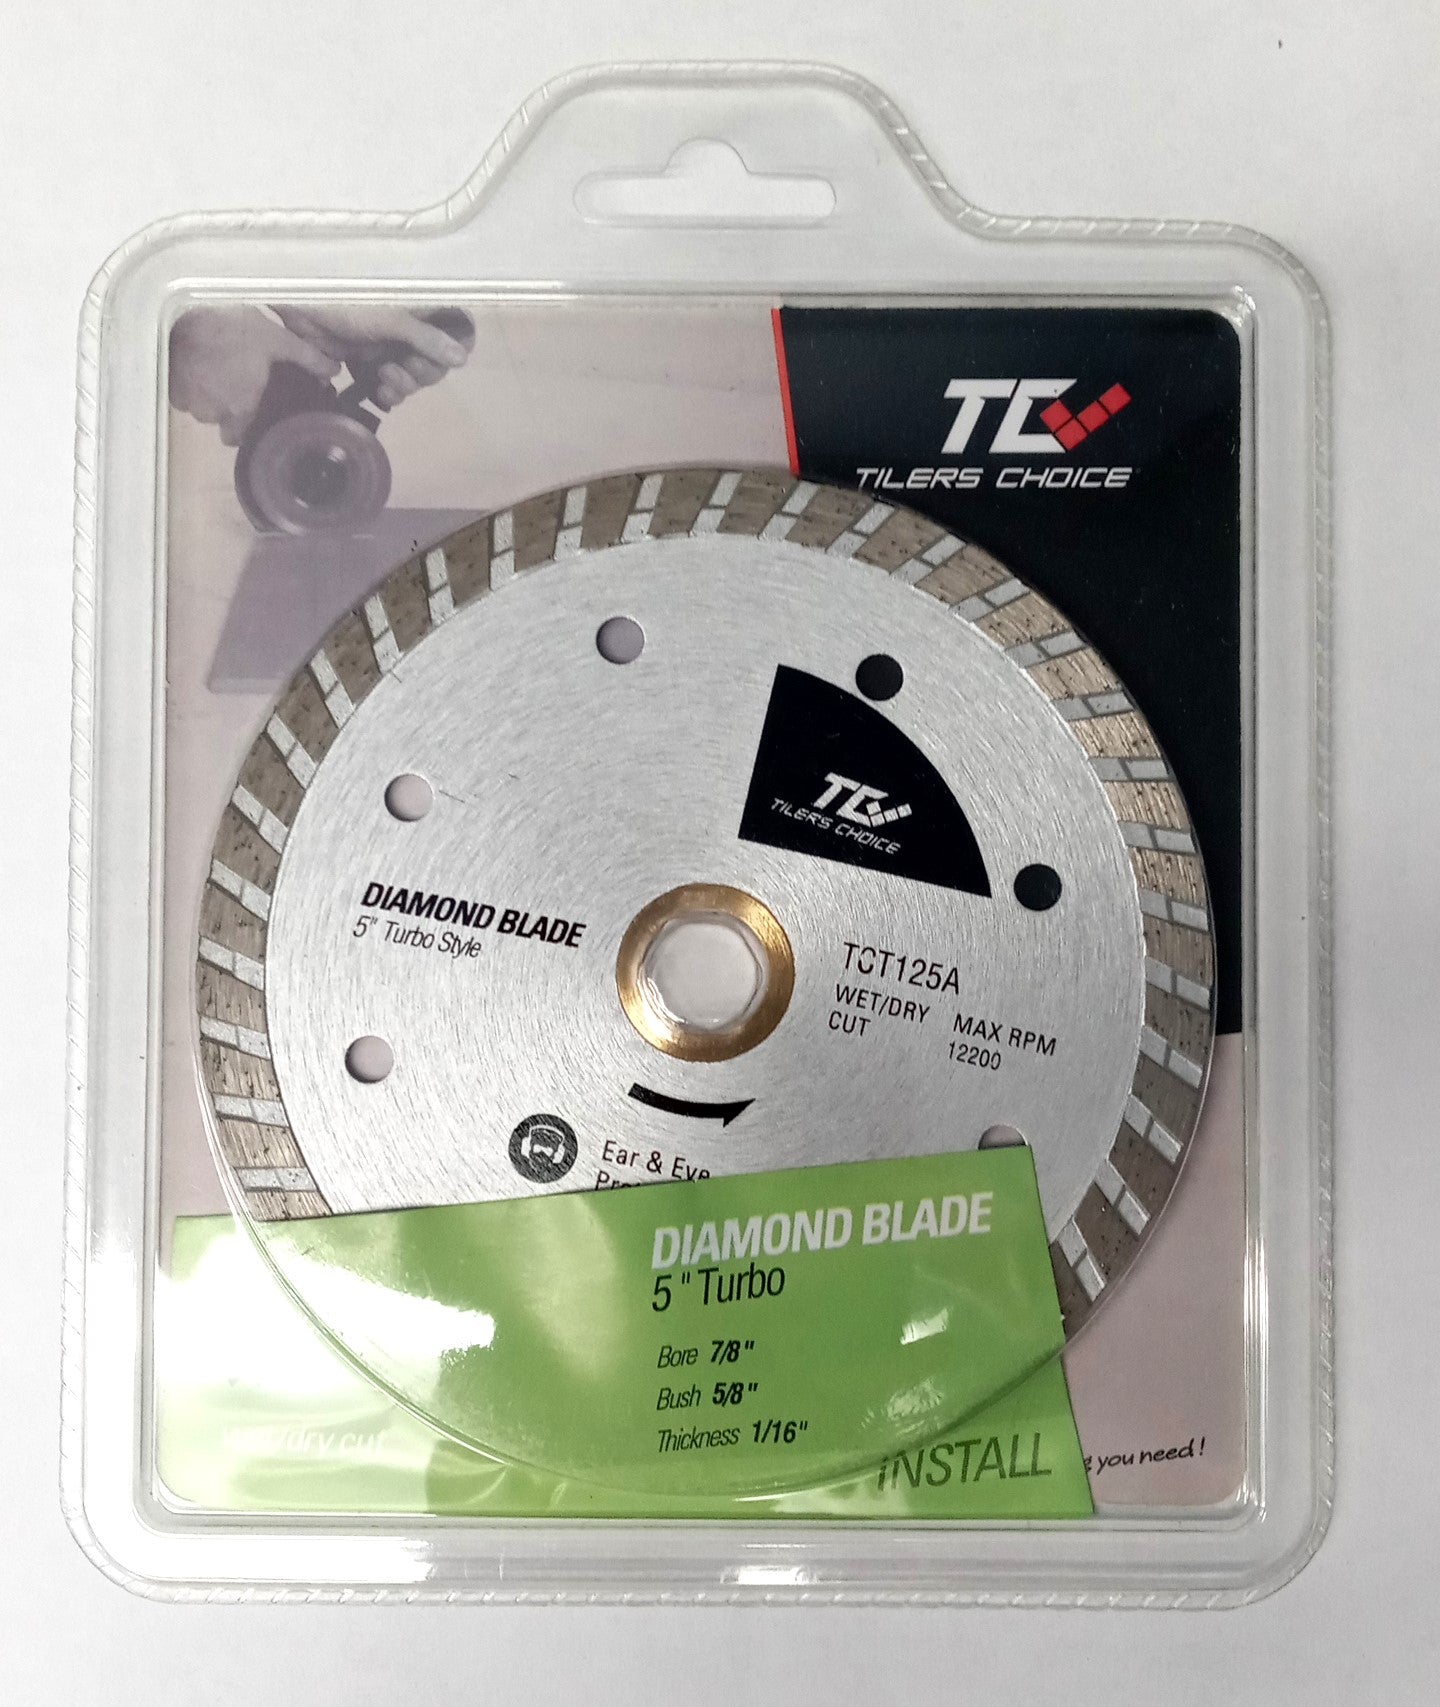 DTA TCT125A Tiler's Choice 5" Turbo Style Diamond Blade for Tile